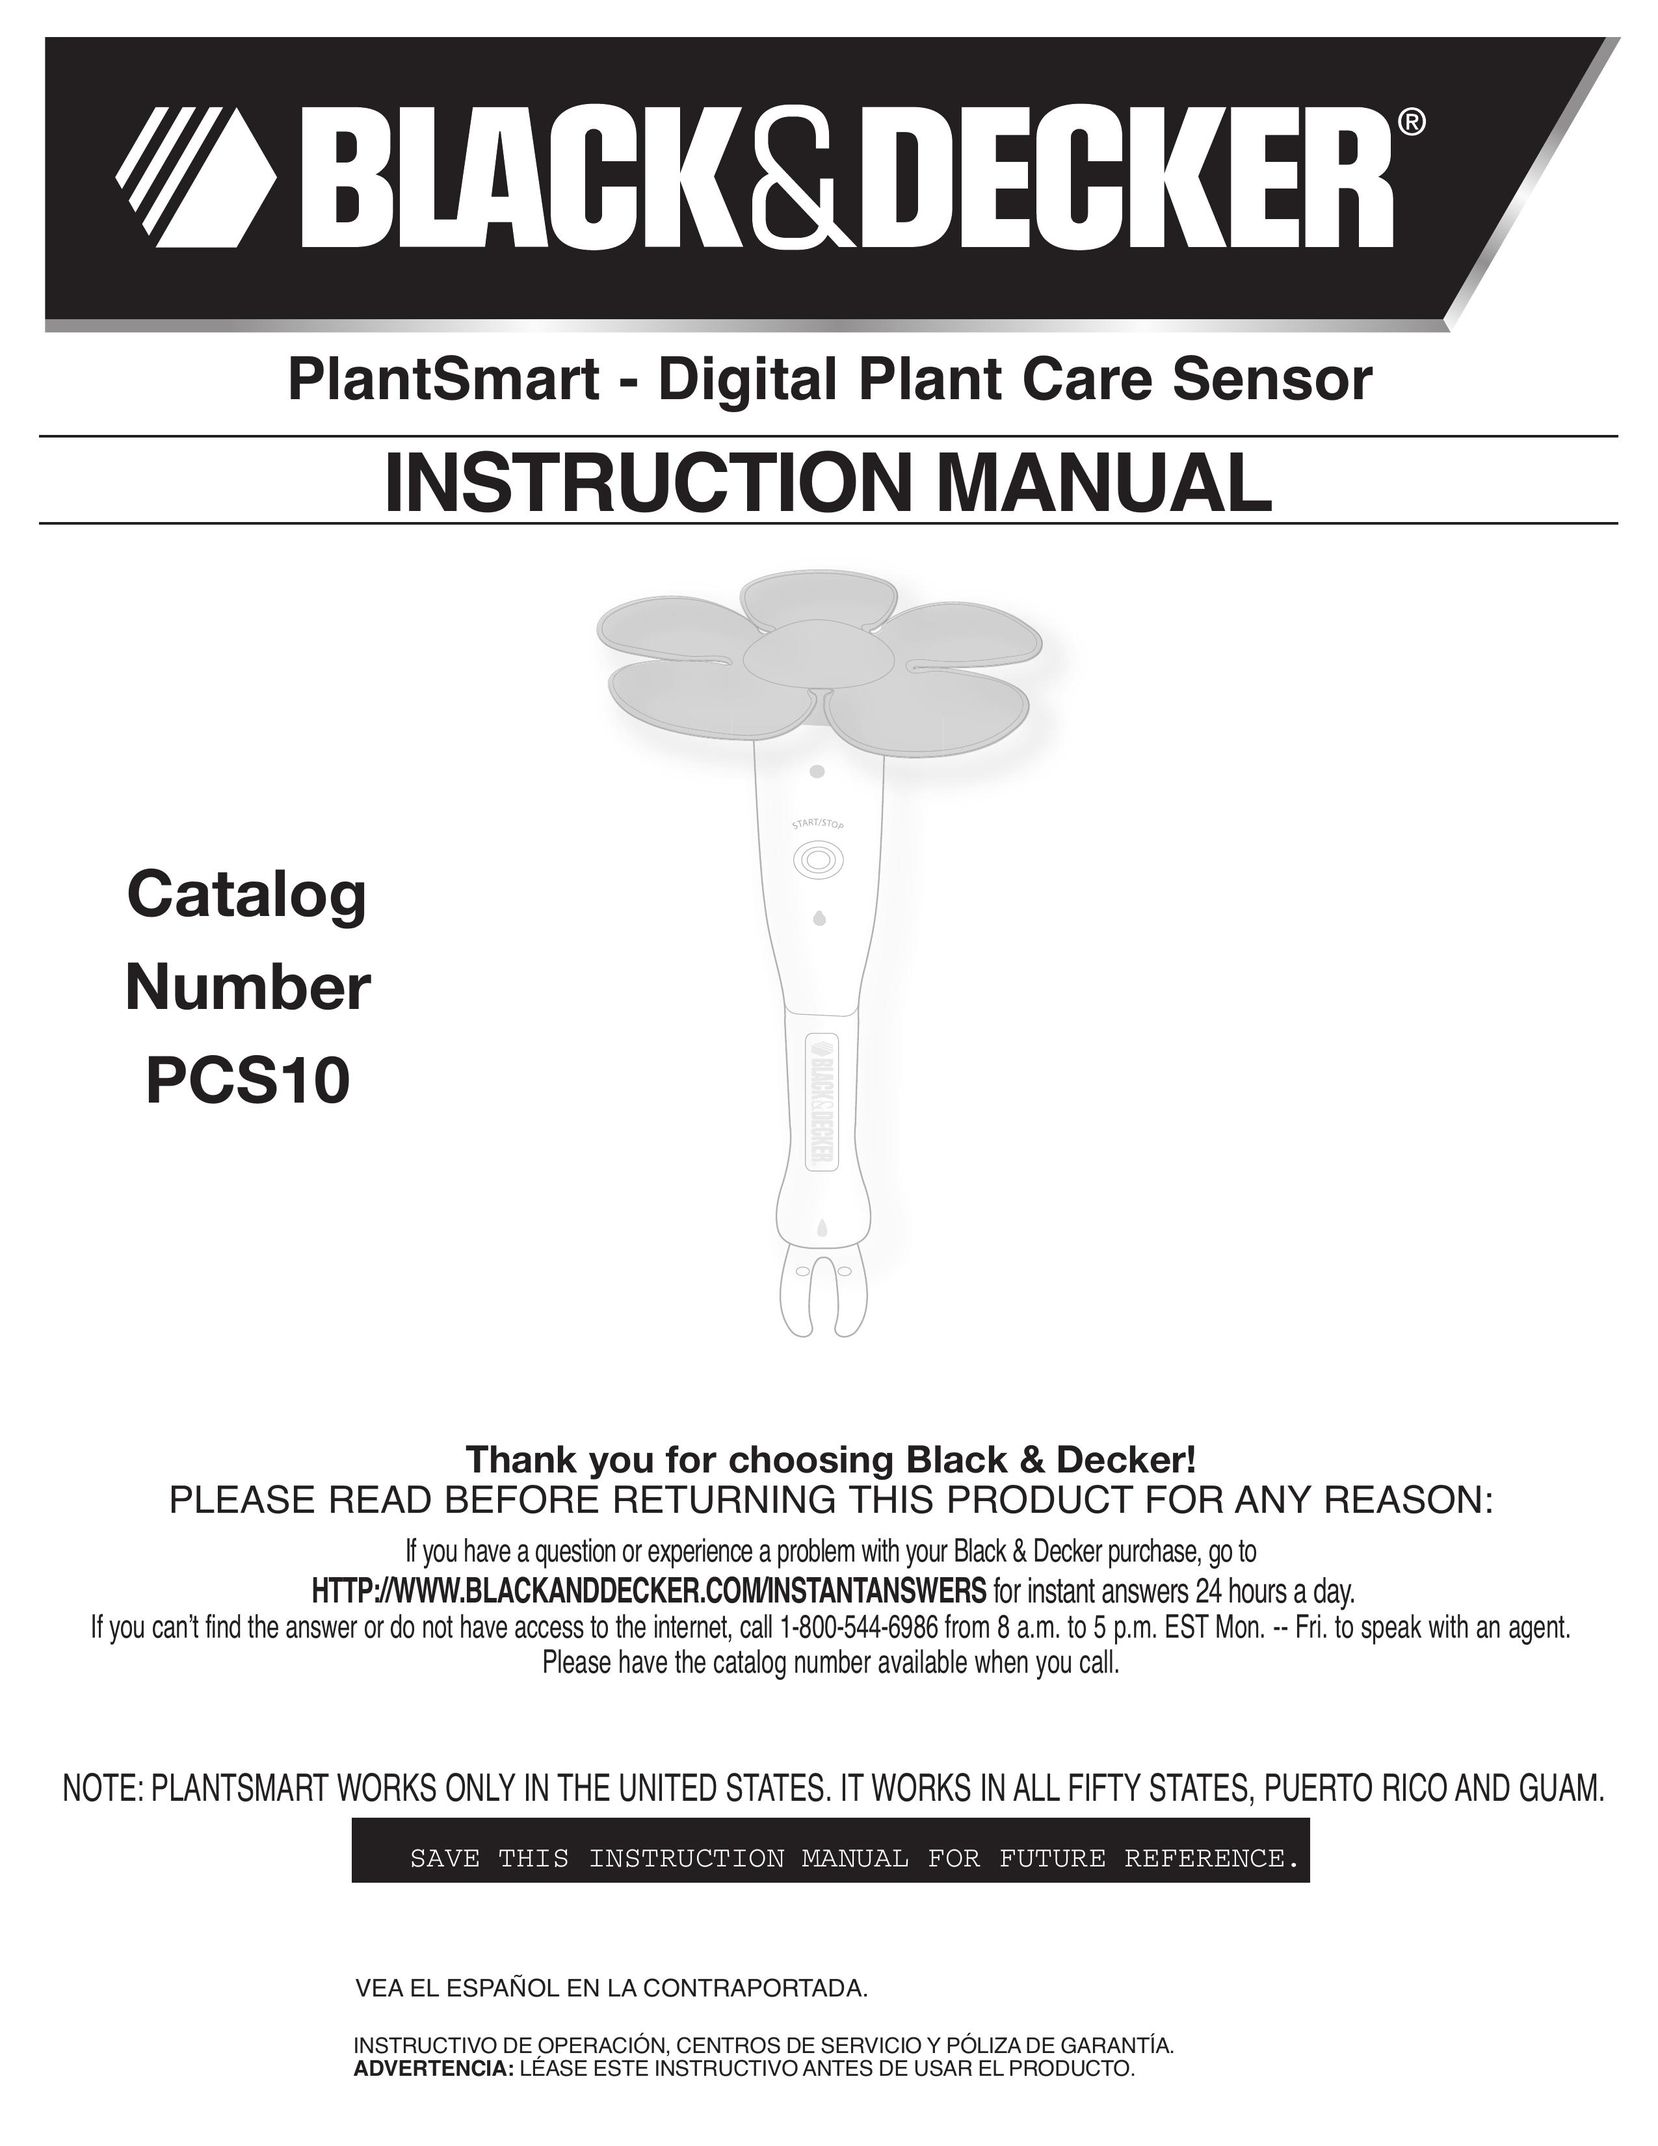 Black & Decker PCS10 Stud Sensor User Manual